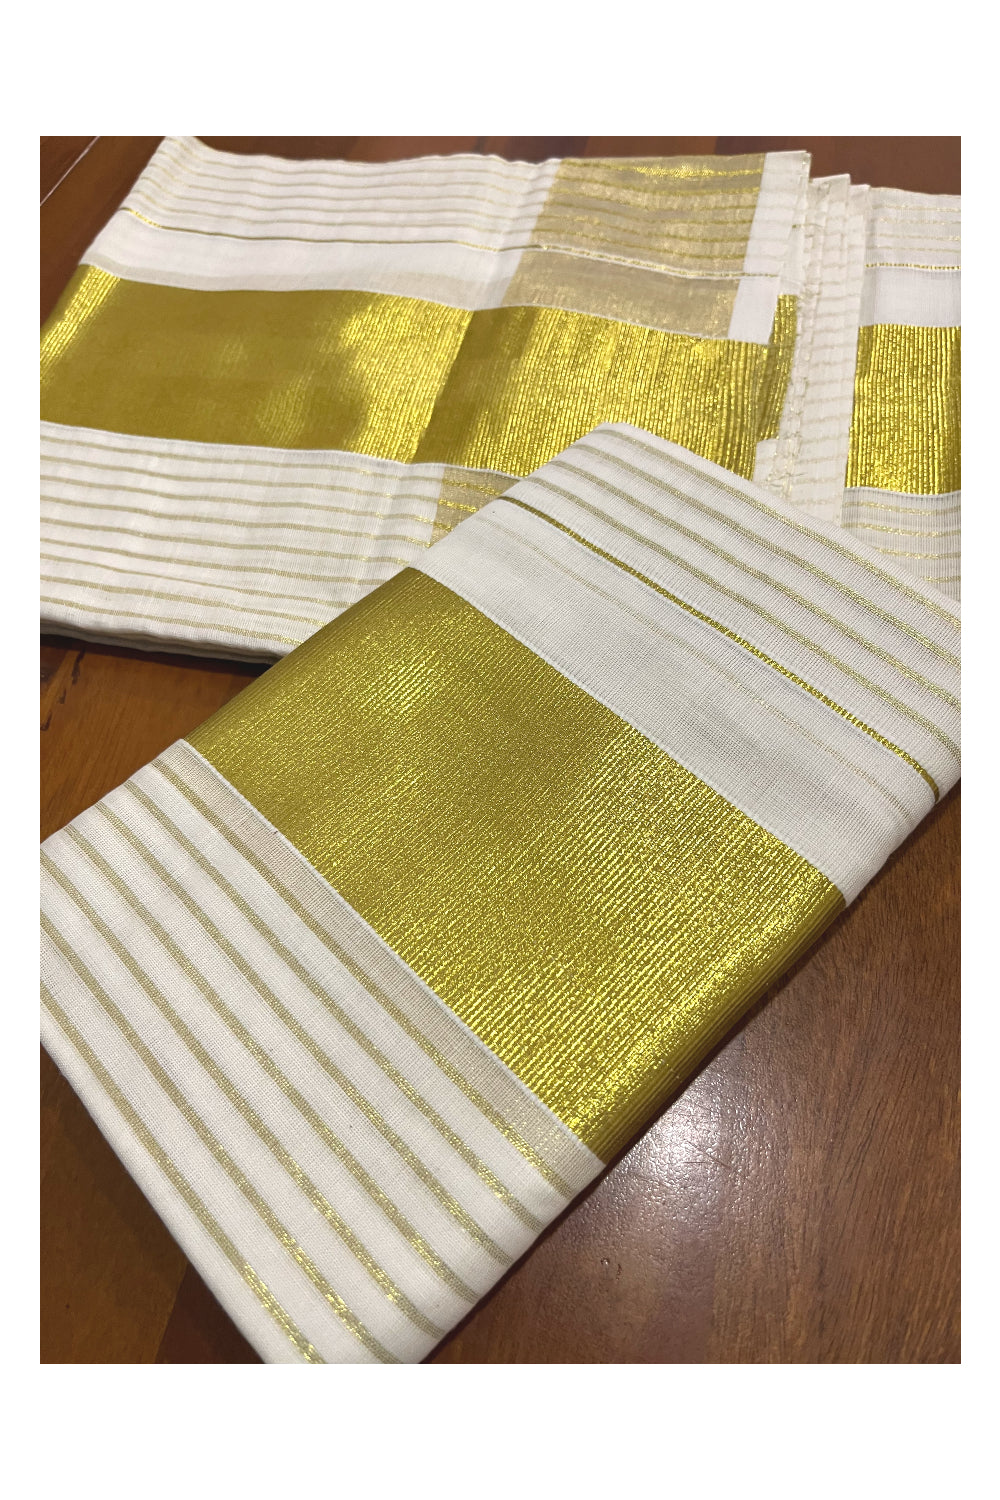 Pure Cotton Set Mundu (Mundum Neriyathum) with Kasavu Woven Lines Design on Body 2.80 Mtrs